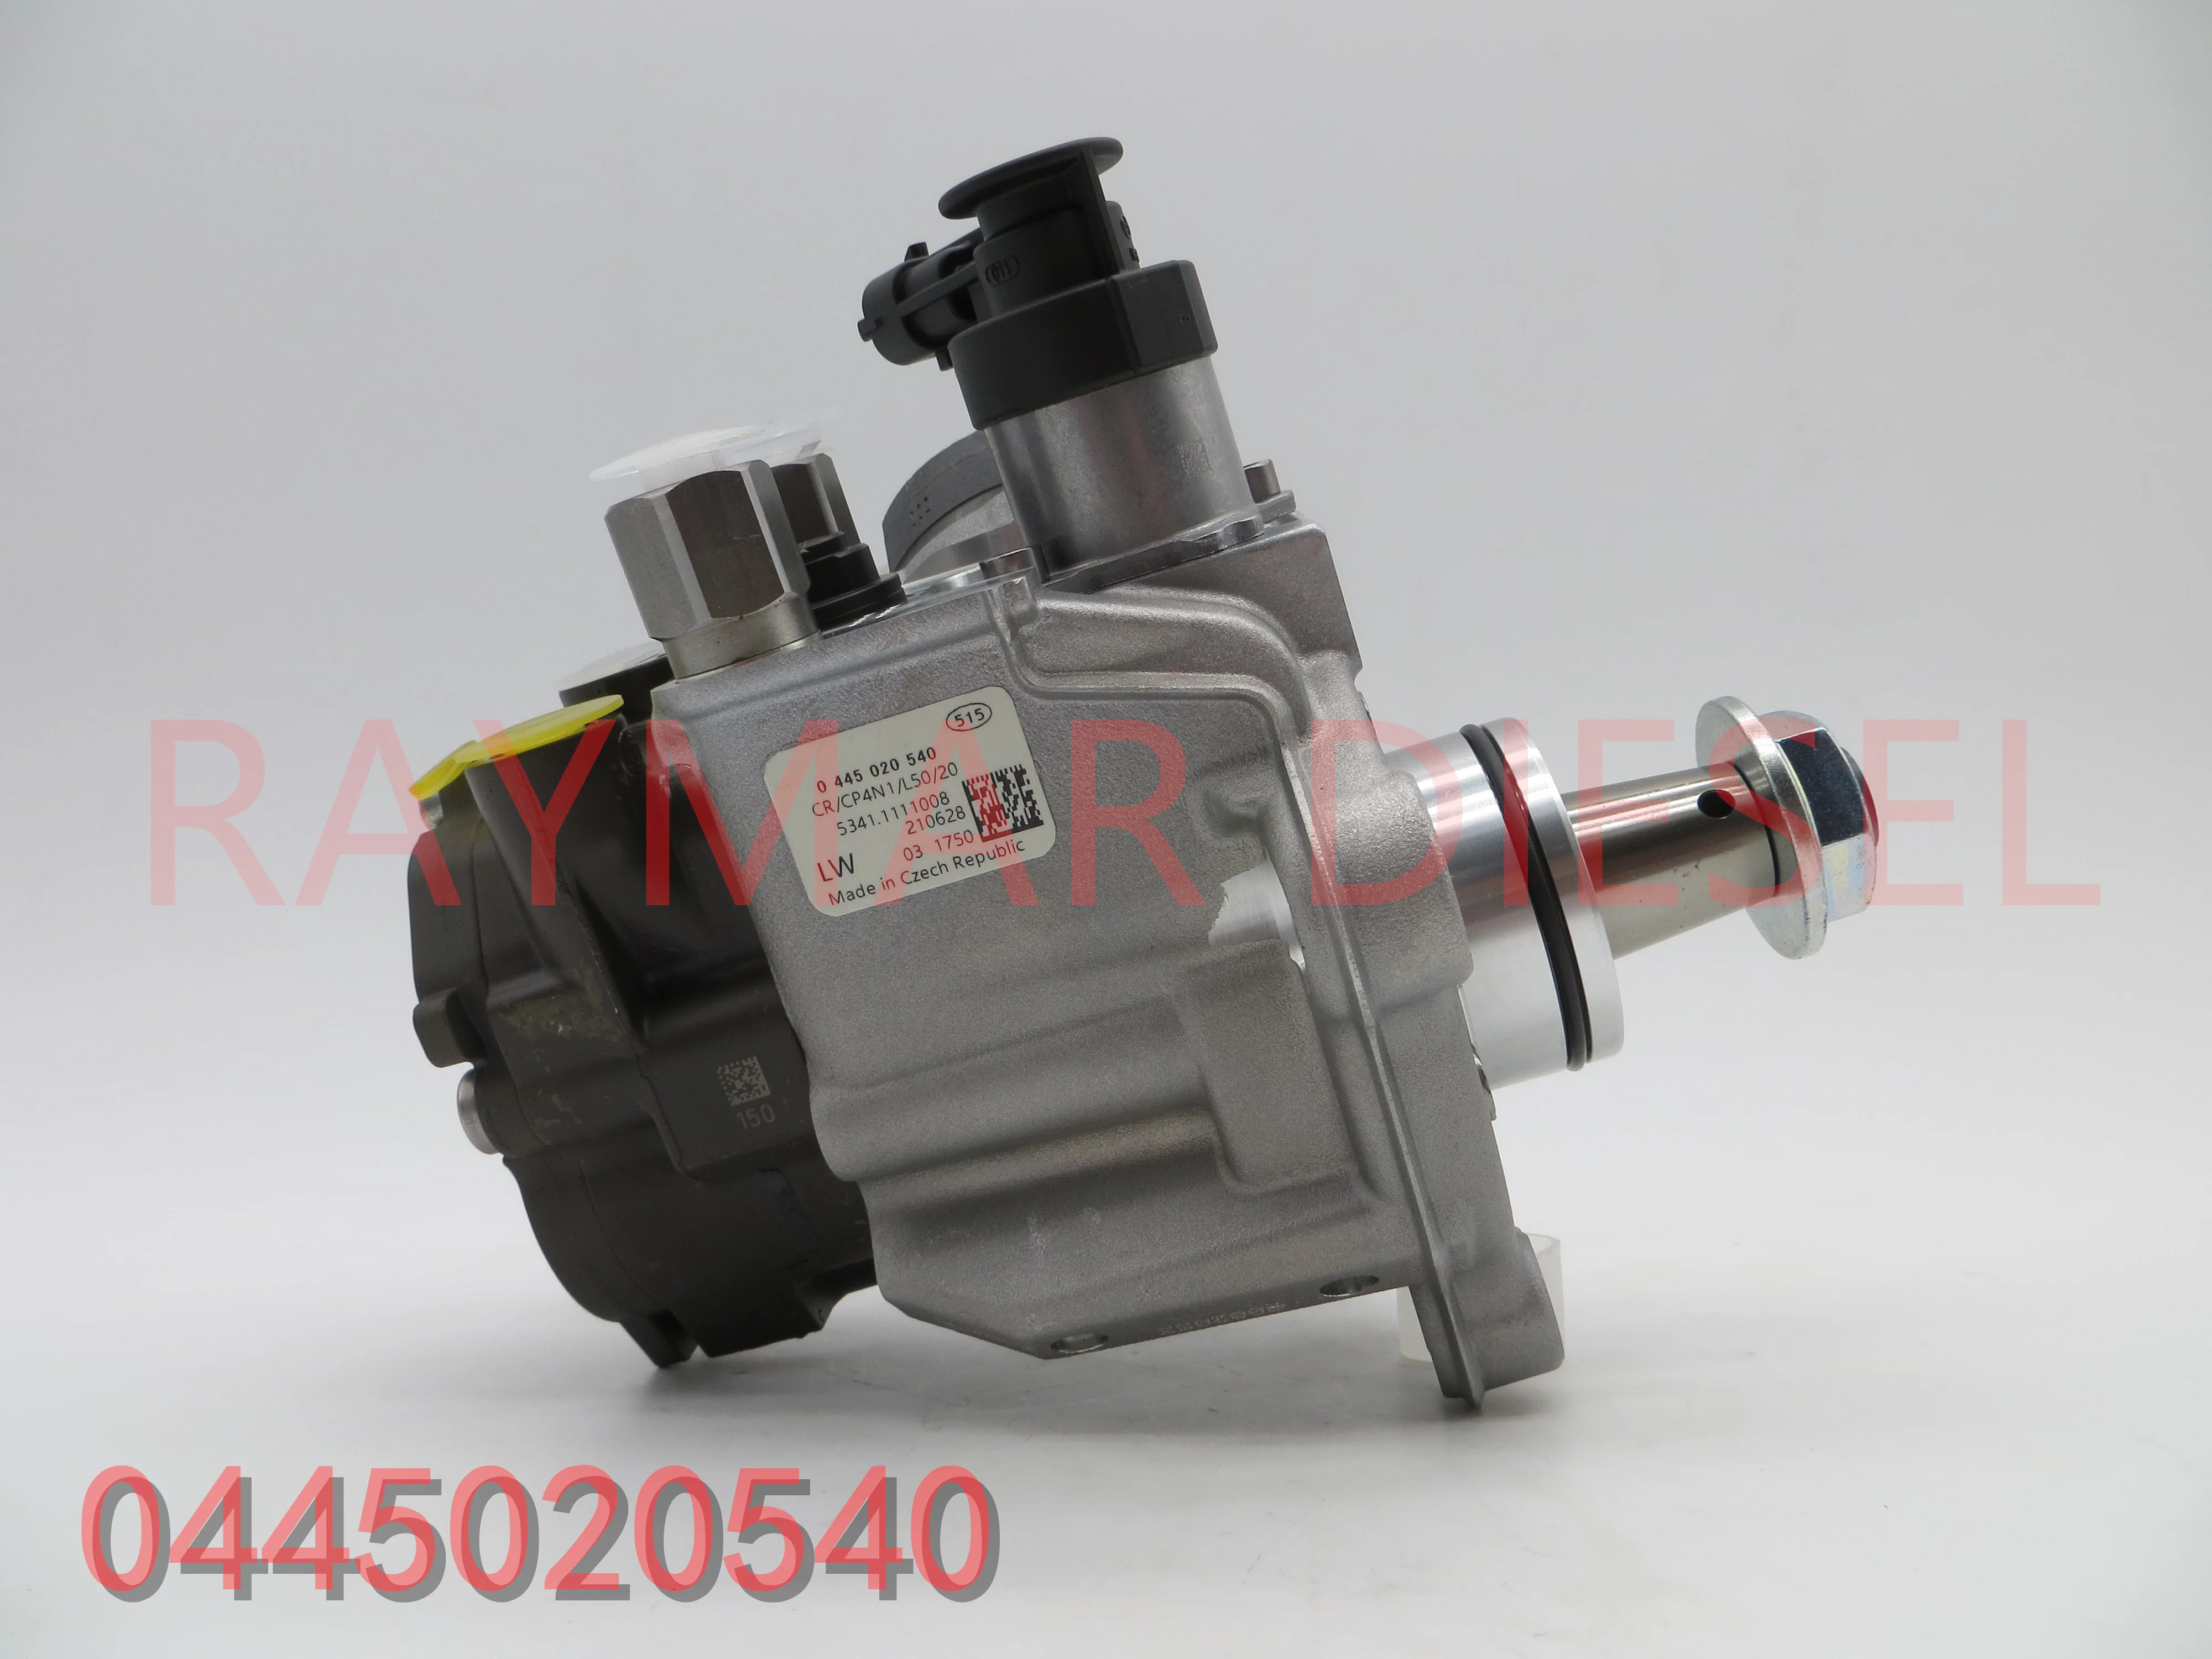 

Genuine And Brand New Diesel Fuel Pump 0445020540, 5341.1111008